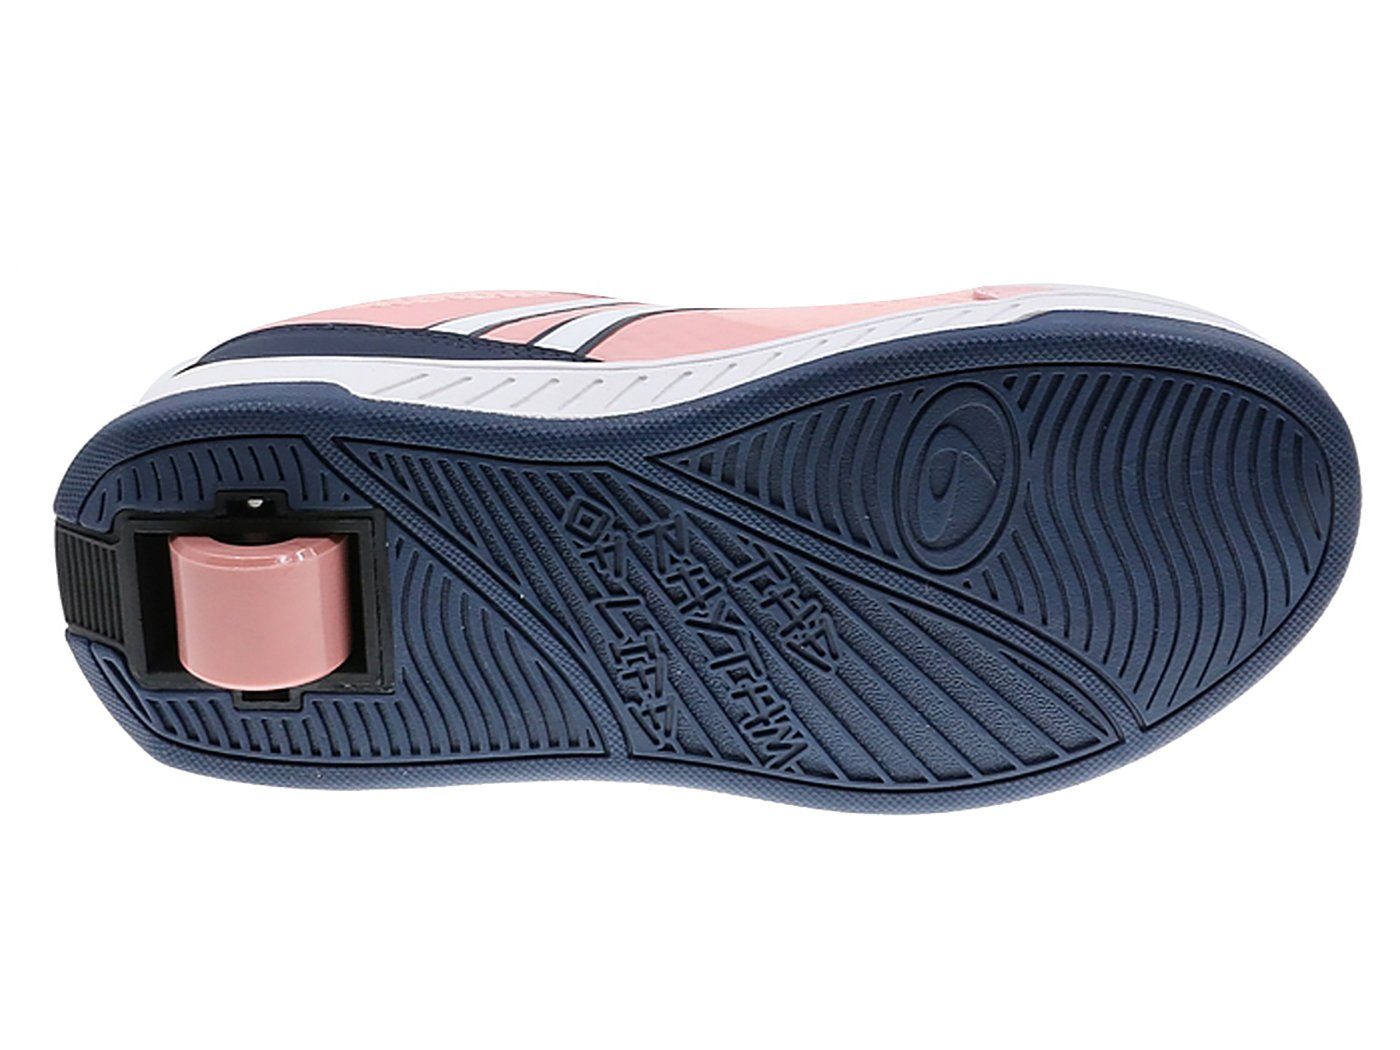 BREEZY ROLLERS Rollschuhe Material, Sneaker atmungsaktive mit mit LED Klettverschluss Schuhe Leuchtsohle, Rollen